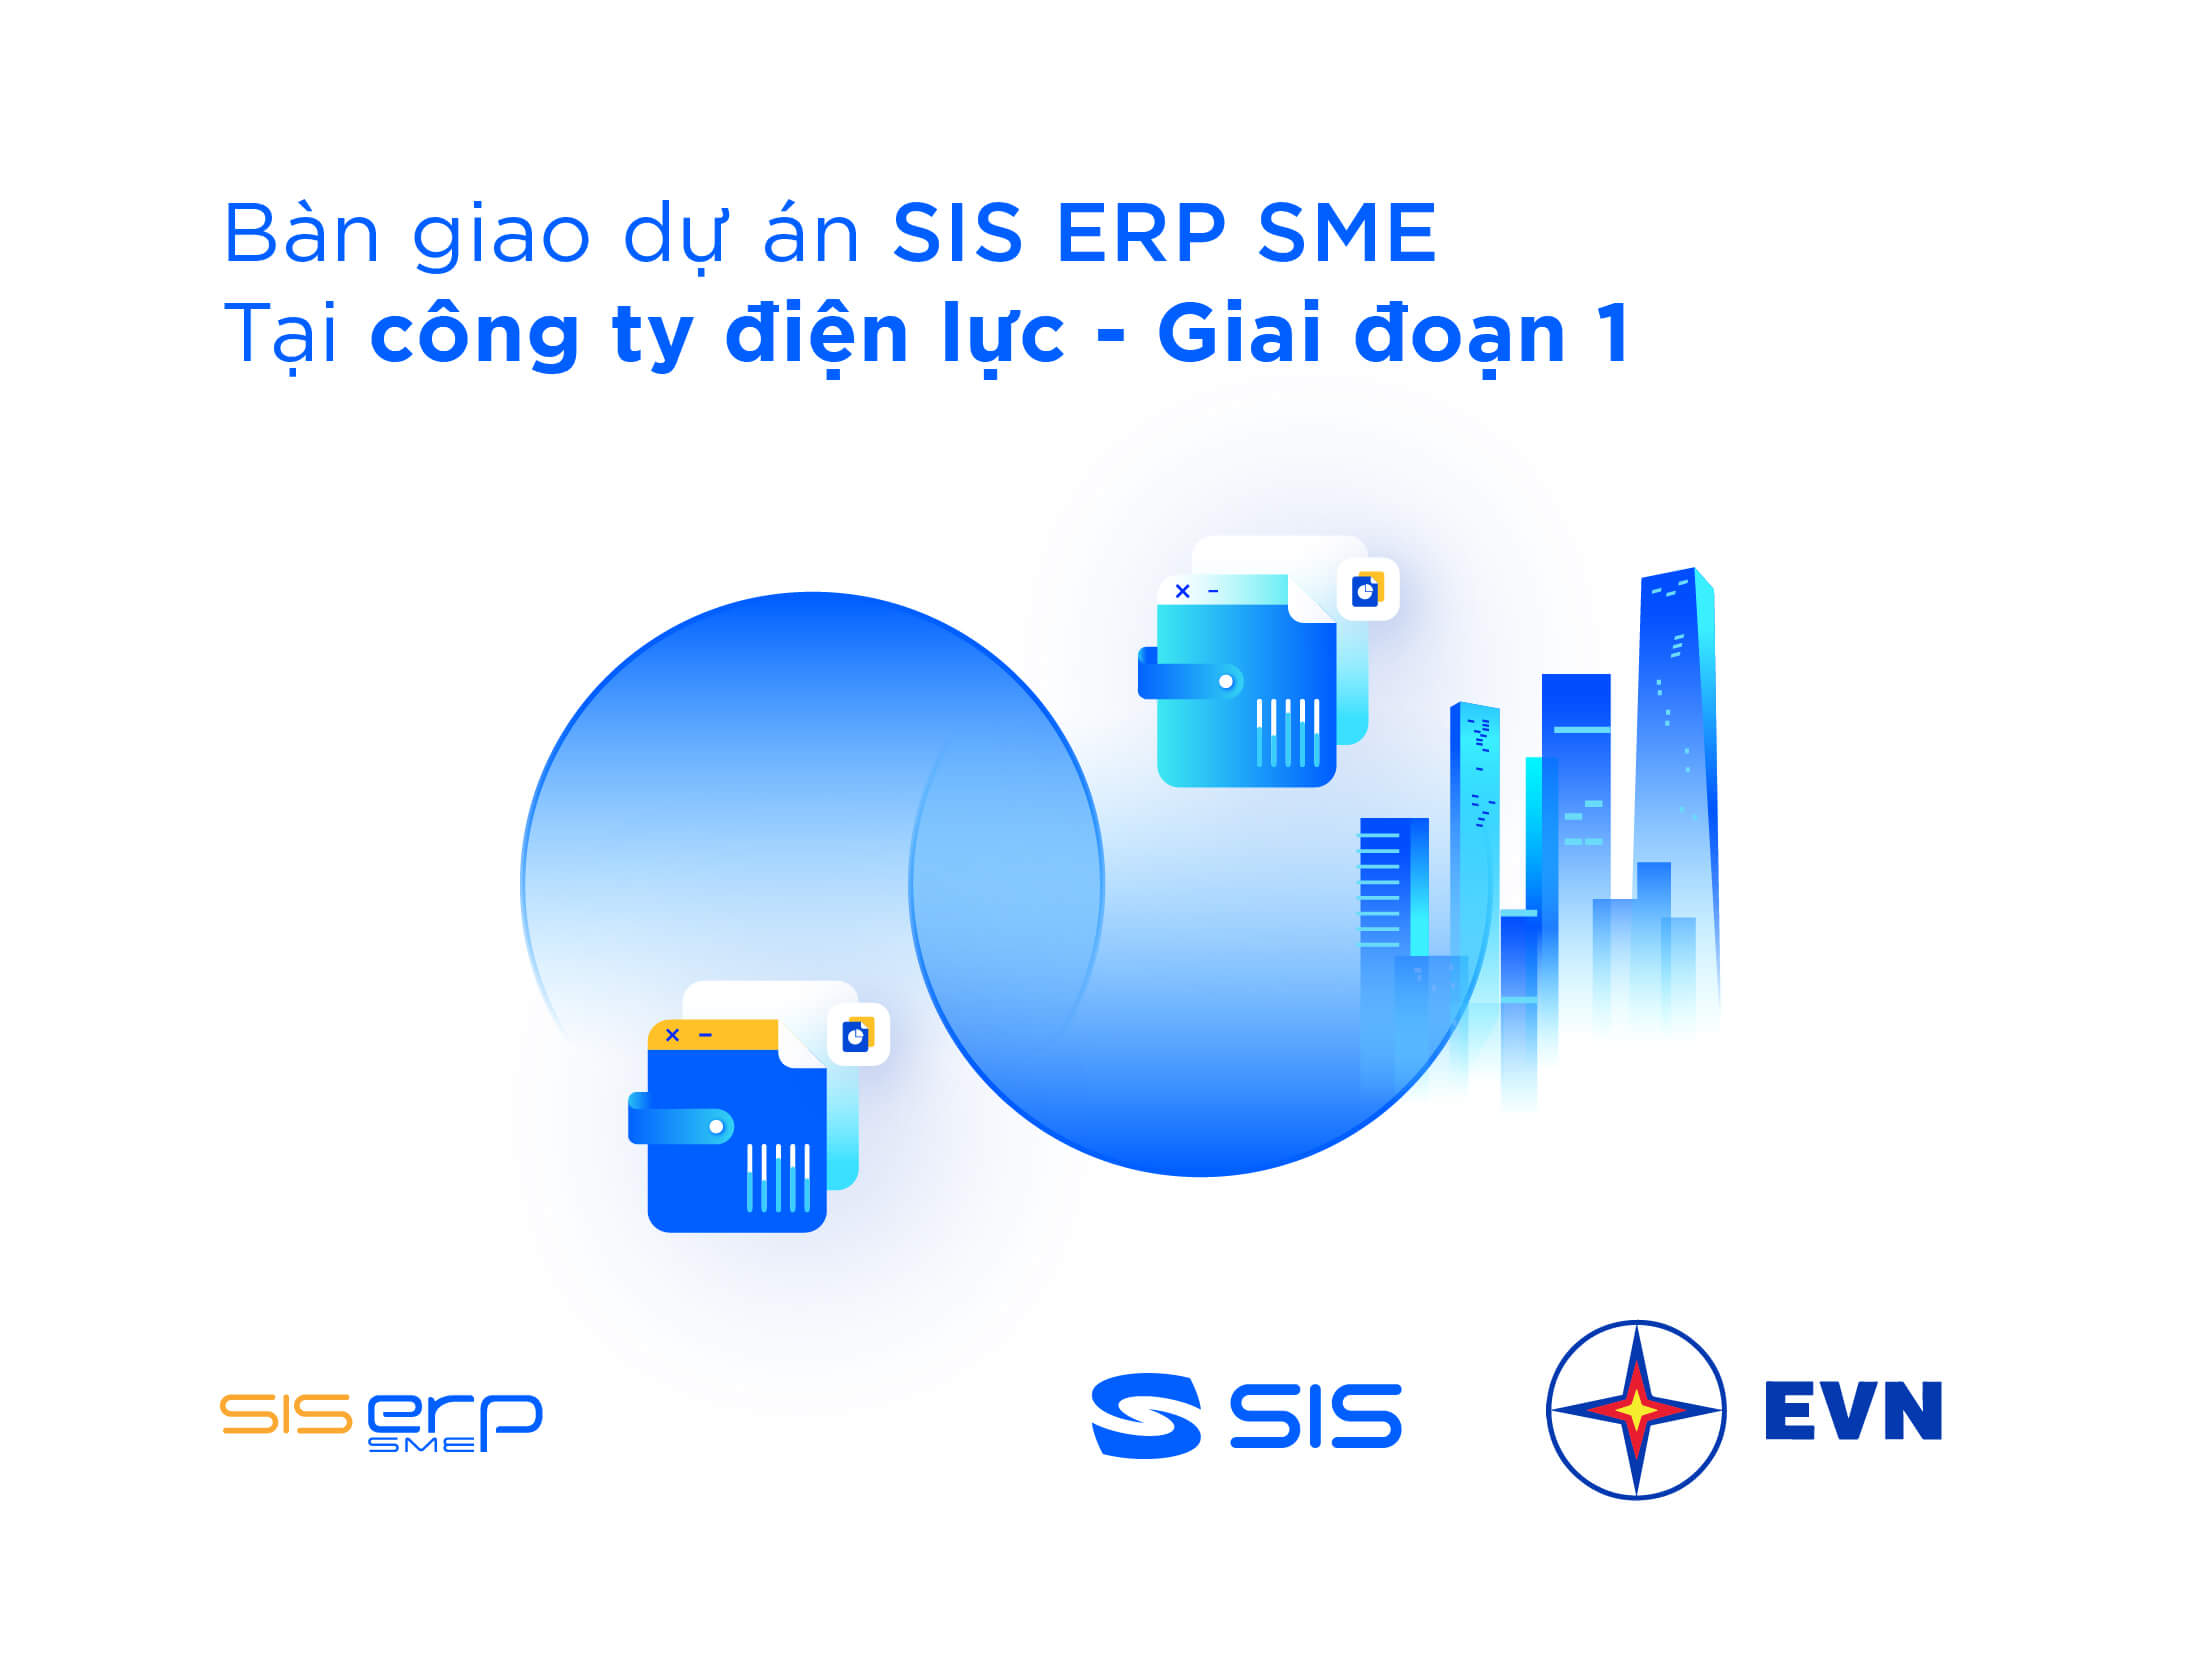 Bàn giao Dự án SIS ERP tại Công ty điện lực - giai đoạn 1